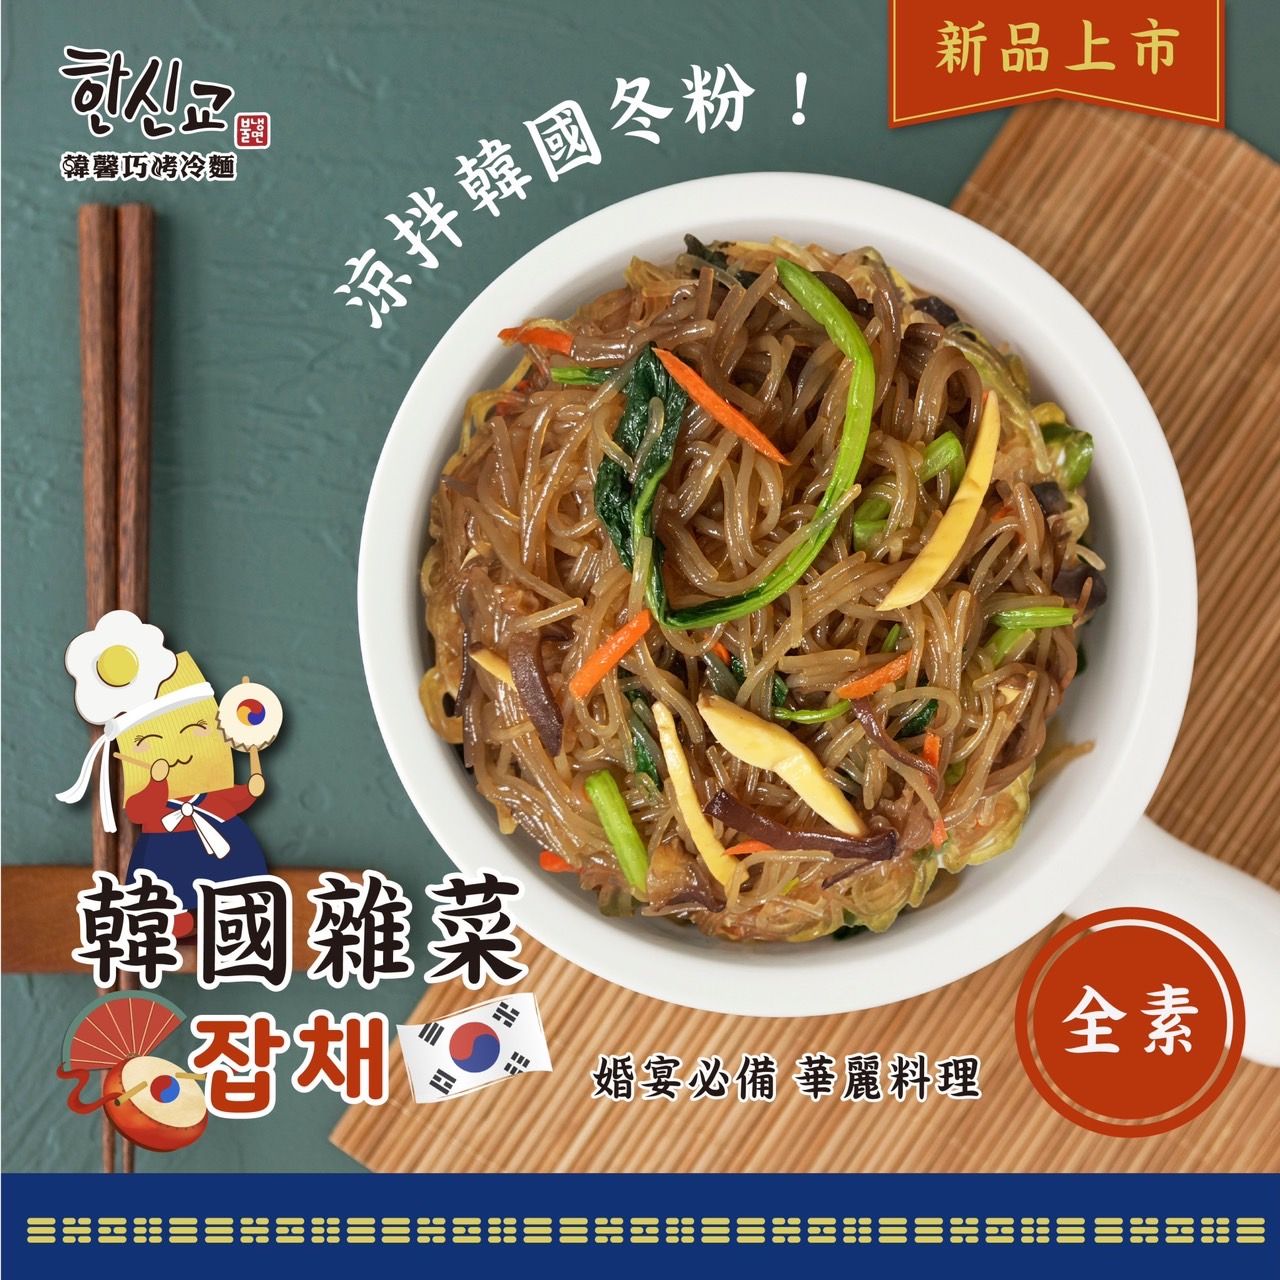 韓國雜菜 #涼拌冬粉#잡채 #（全素）網路票選台灣人最喜歡的韓國料理第一名!